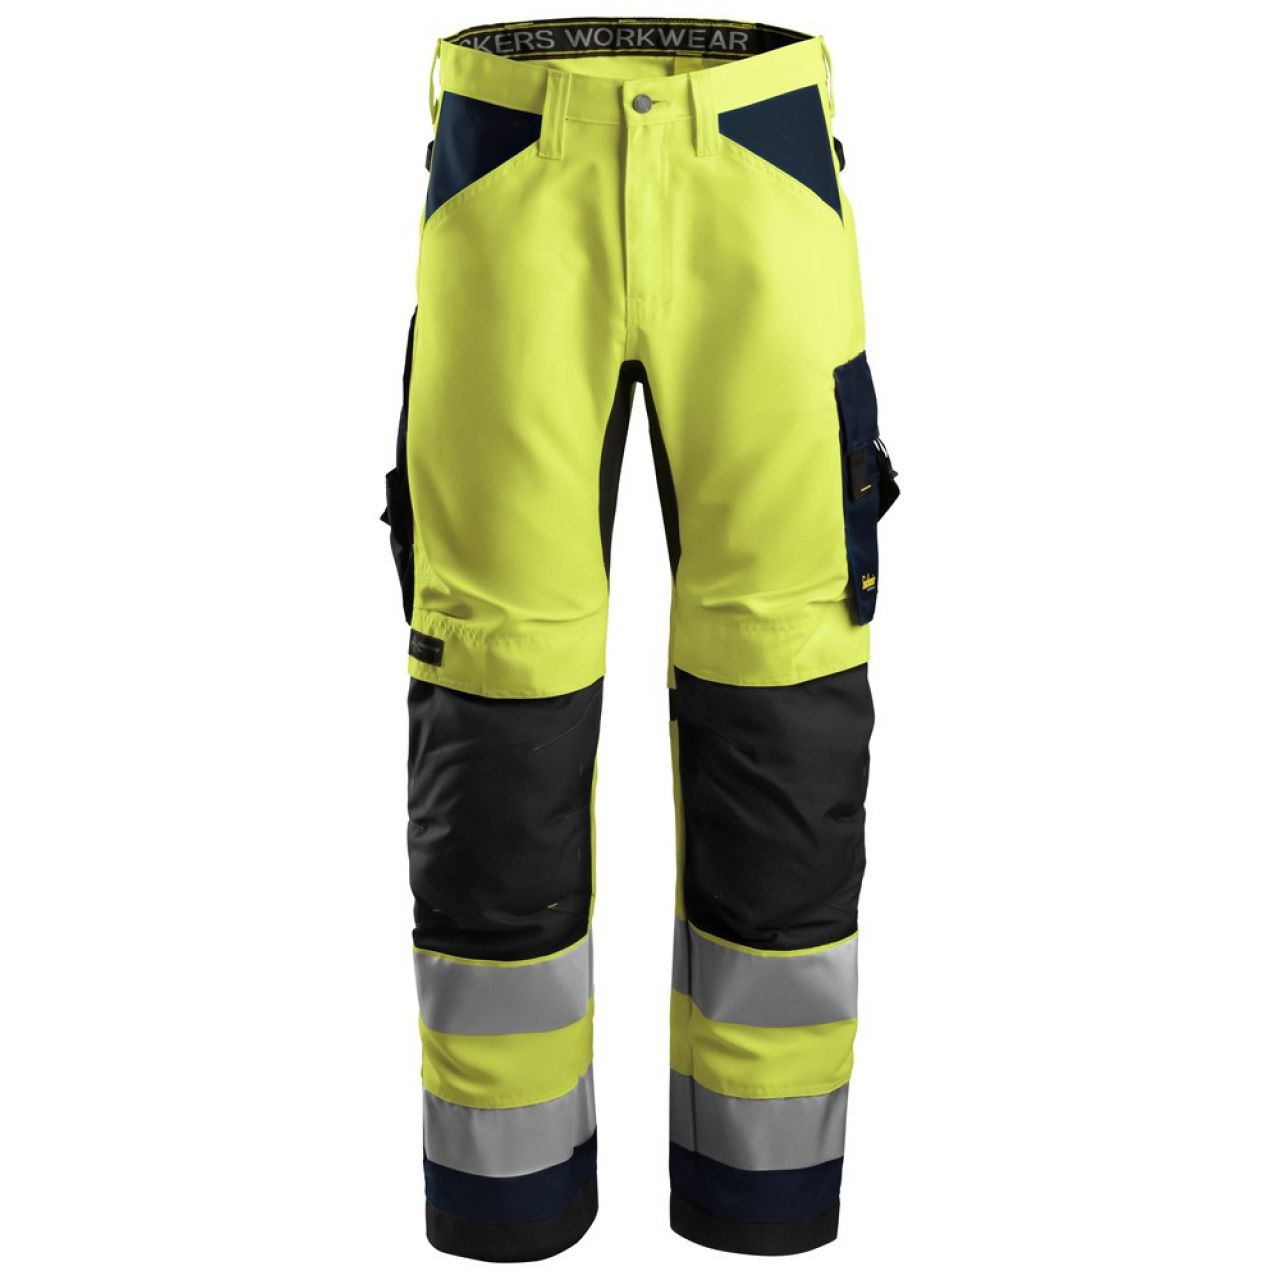 6331 Pantalones largos de trabajo de alta visibilidad clase 2 AllroundWork amarillo-azul marino talla 154